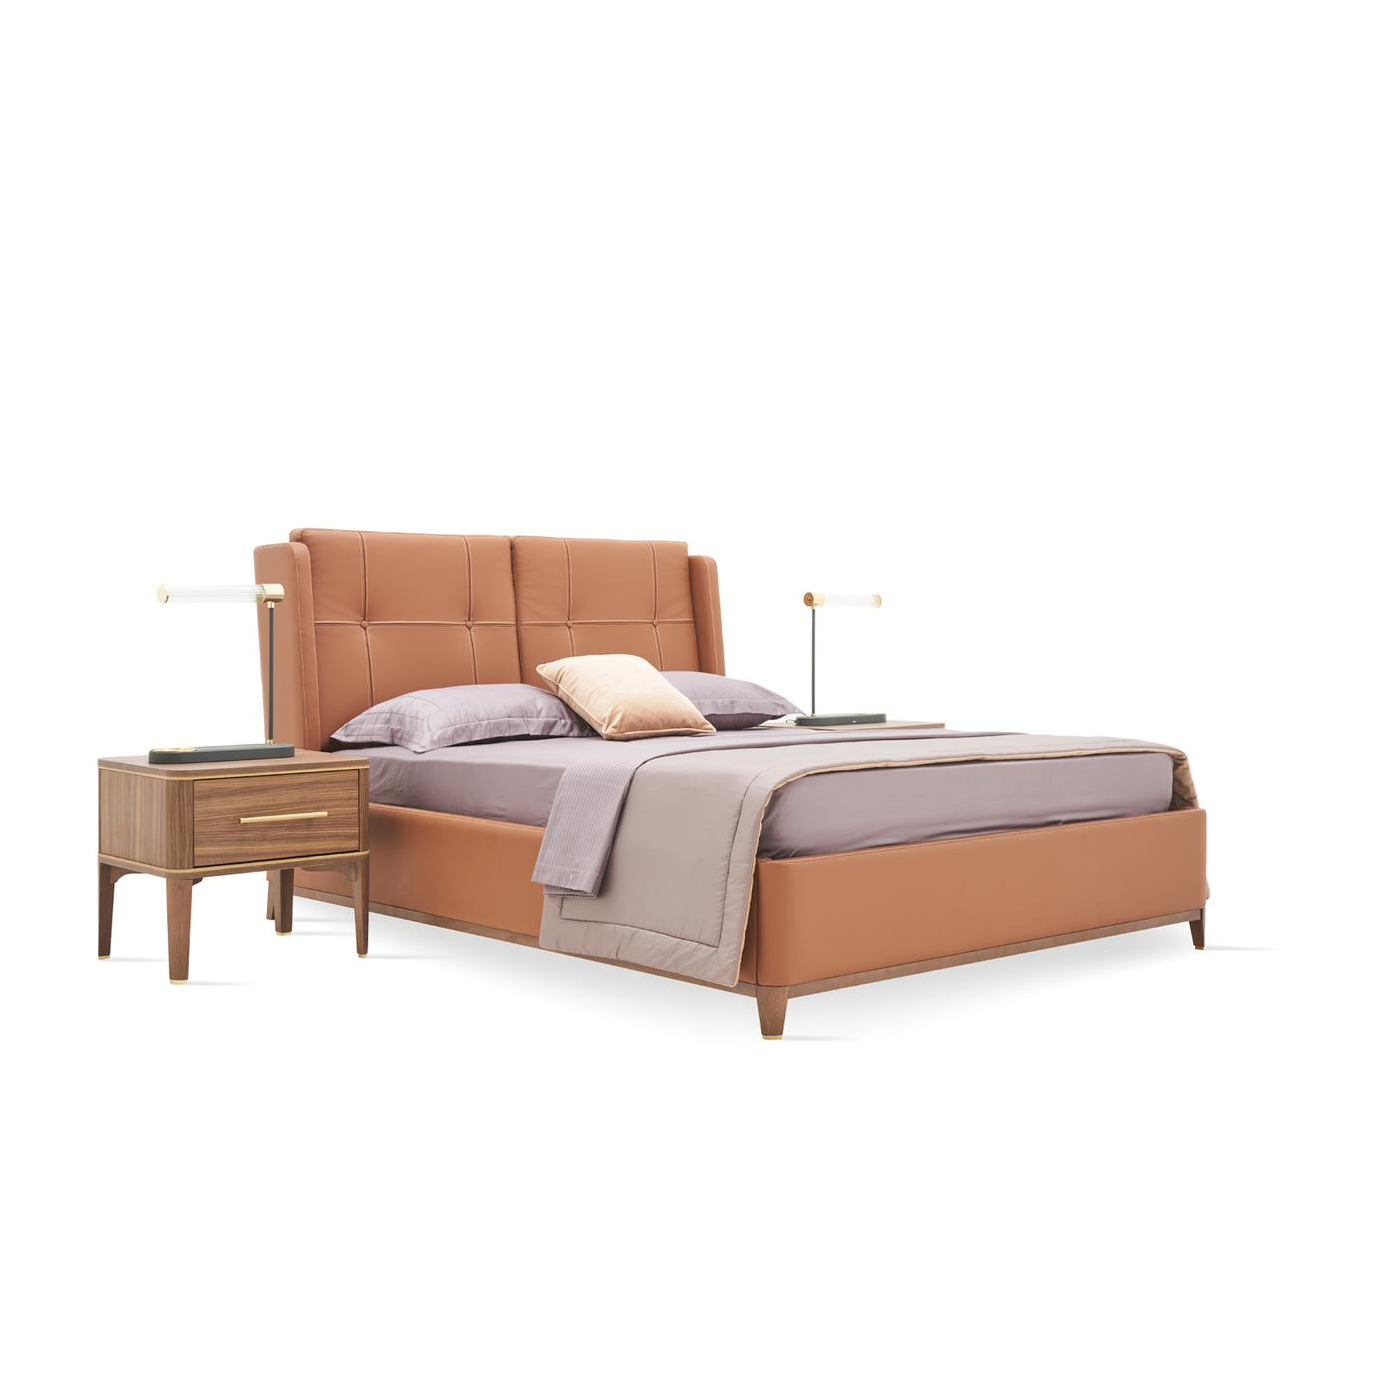 Кровать Enza Home Raum, двуспальная, с подъемным механизмом, 180х200 см